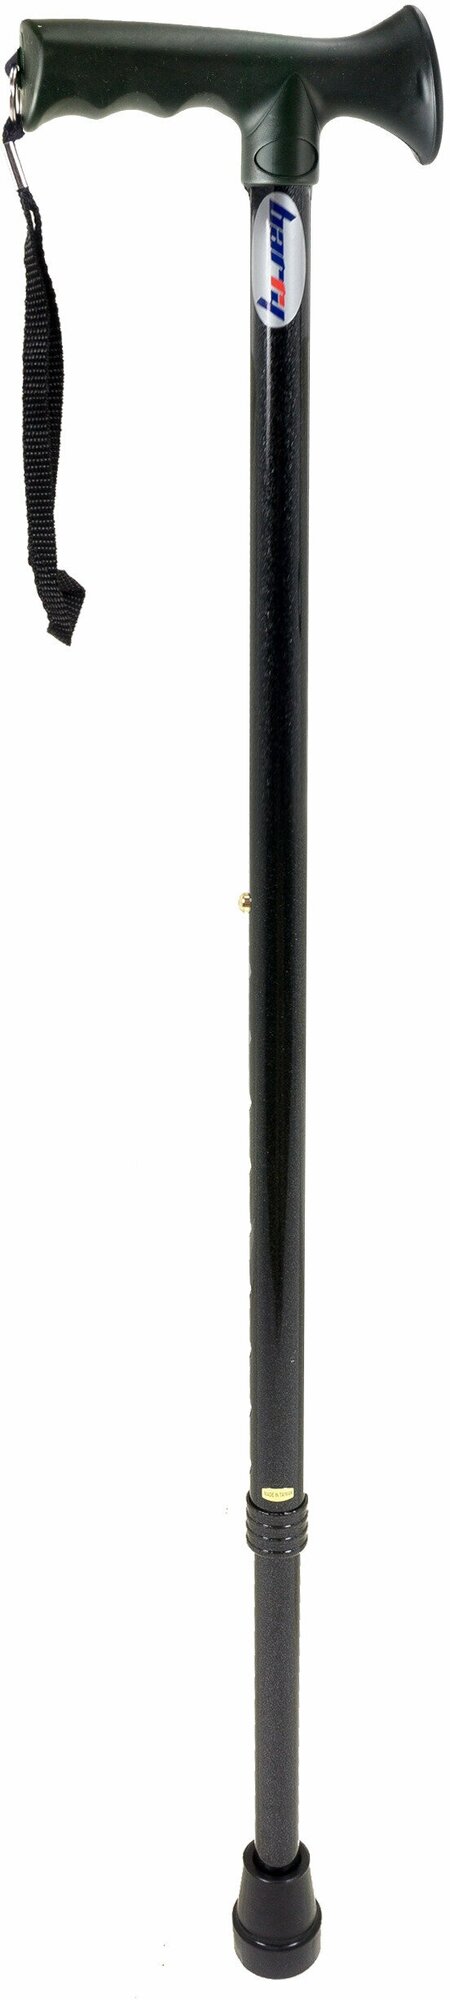 Трость телескопическая с эргономичной резиновой рукояткой (ручкой) 10116 BL, чёрная